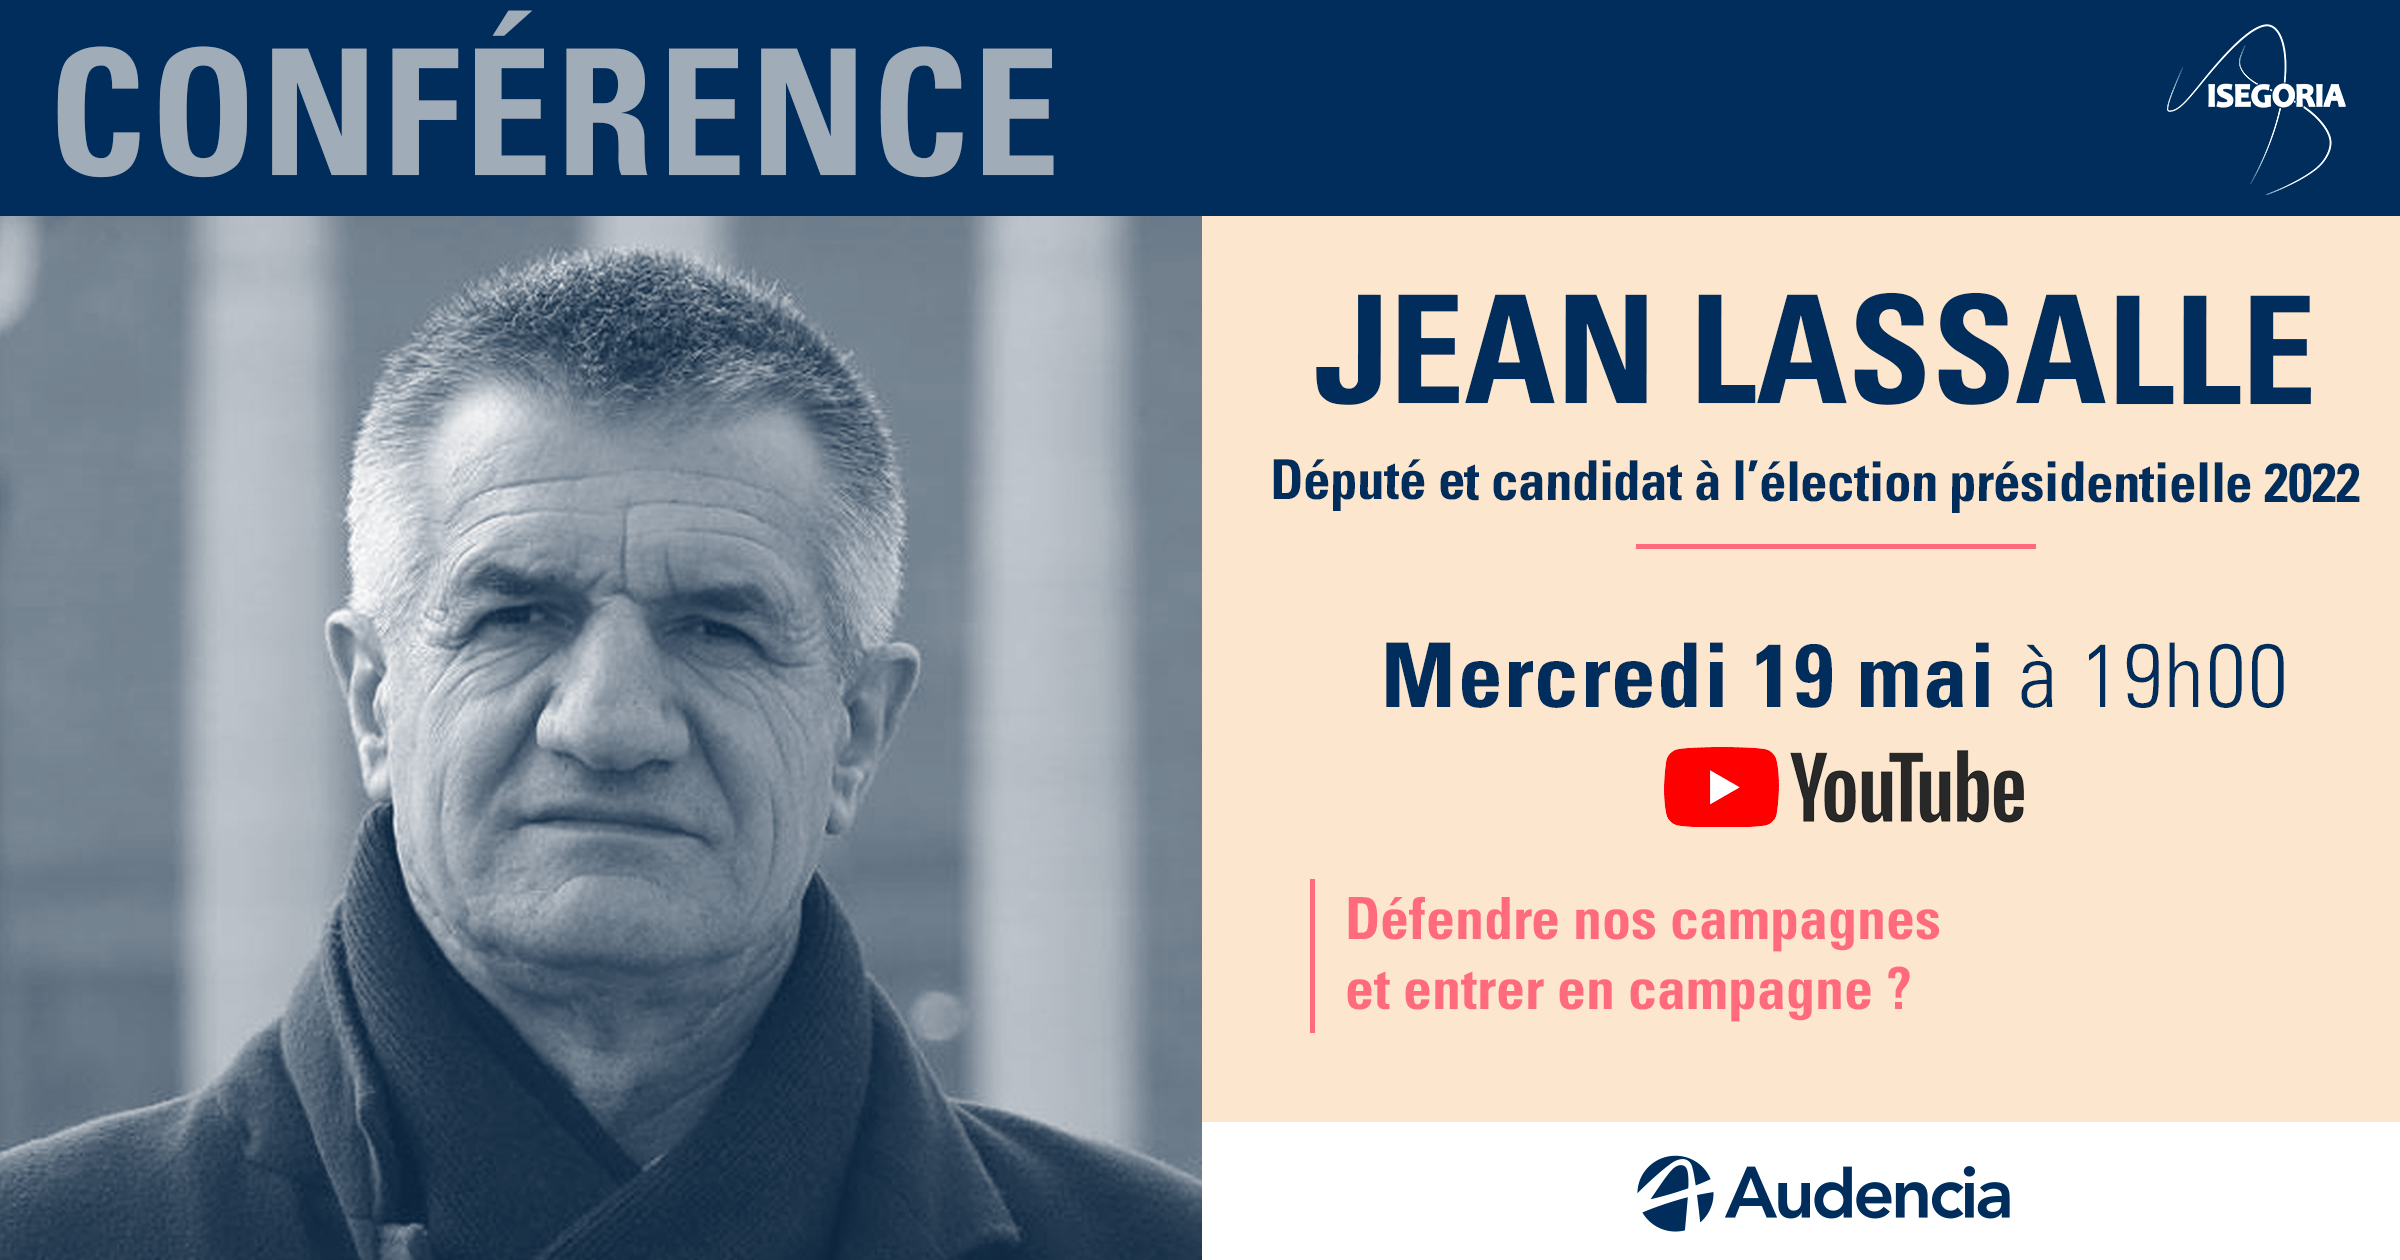 Conférence de Jean Lassalle pour Audienca "Défendre nos campagnes et entrer en campagne ?"